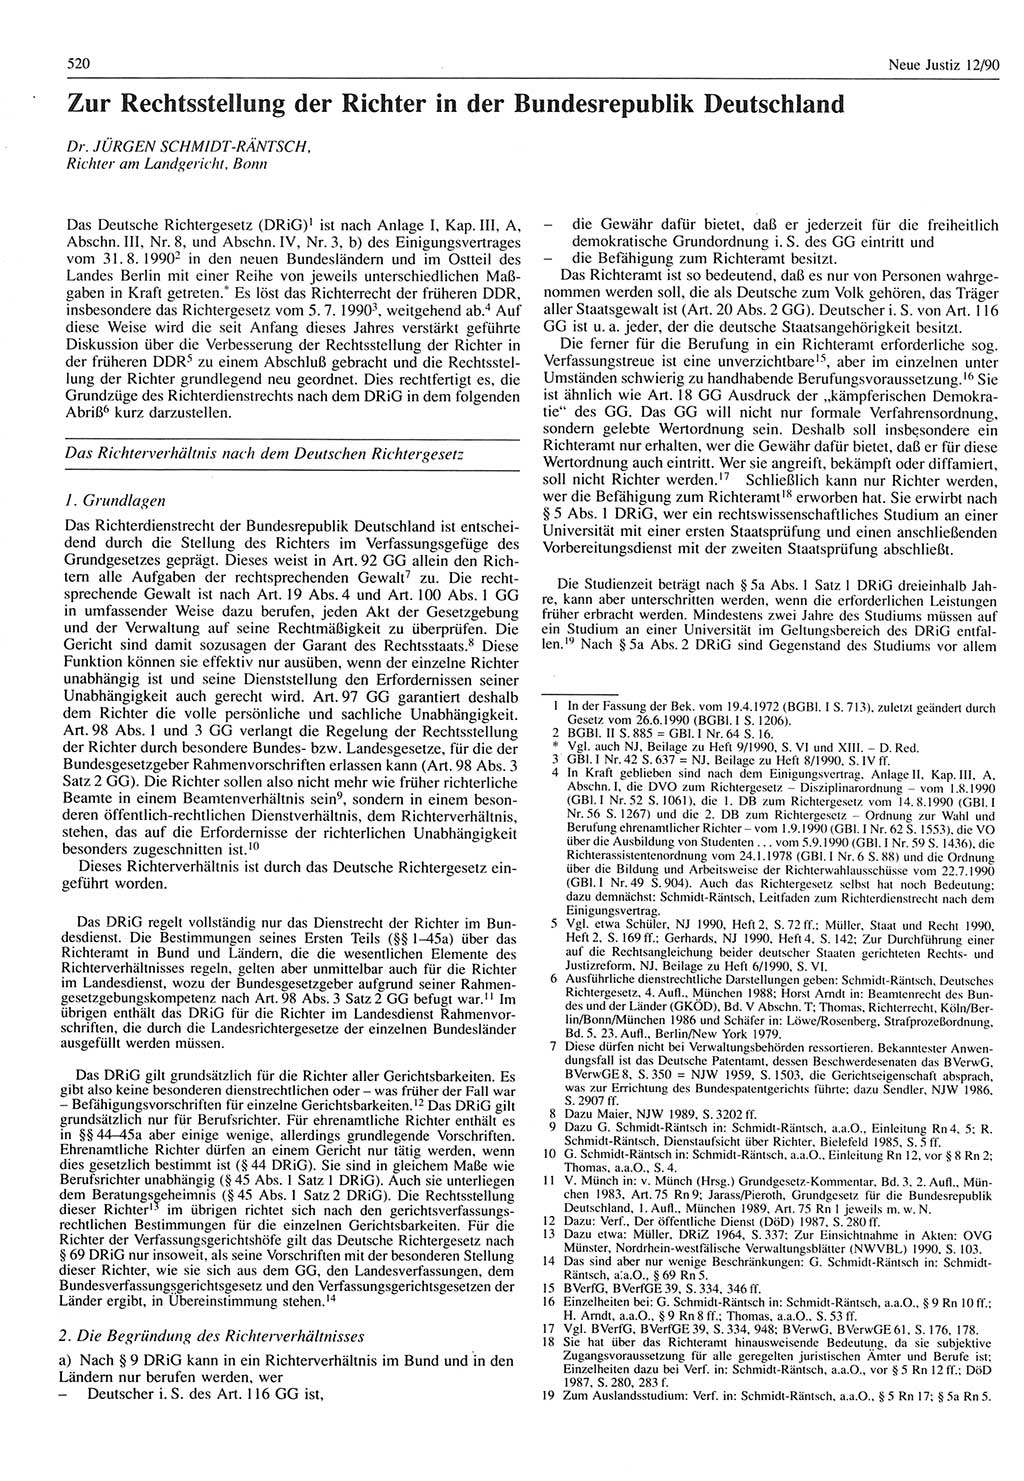 Neue Justiz (NJ), Zeitschrift für Rechtsetzung und Rechtsanwendung [Deutsche Demokratische Republik (DDR)], 44. Jahrgang 1990, Seite 520 (NJ DDR 1990, S. 520)